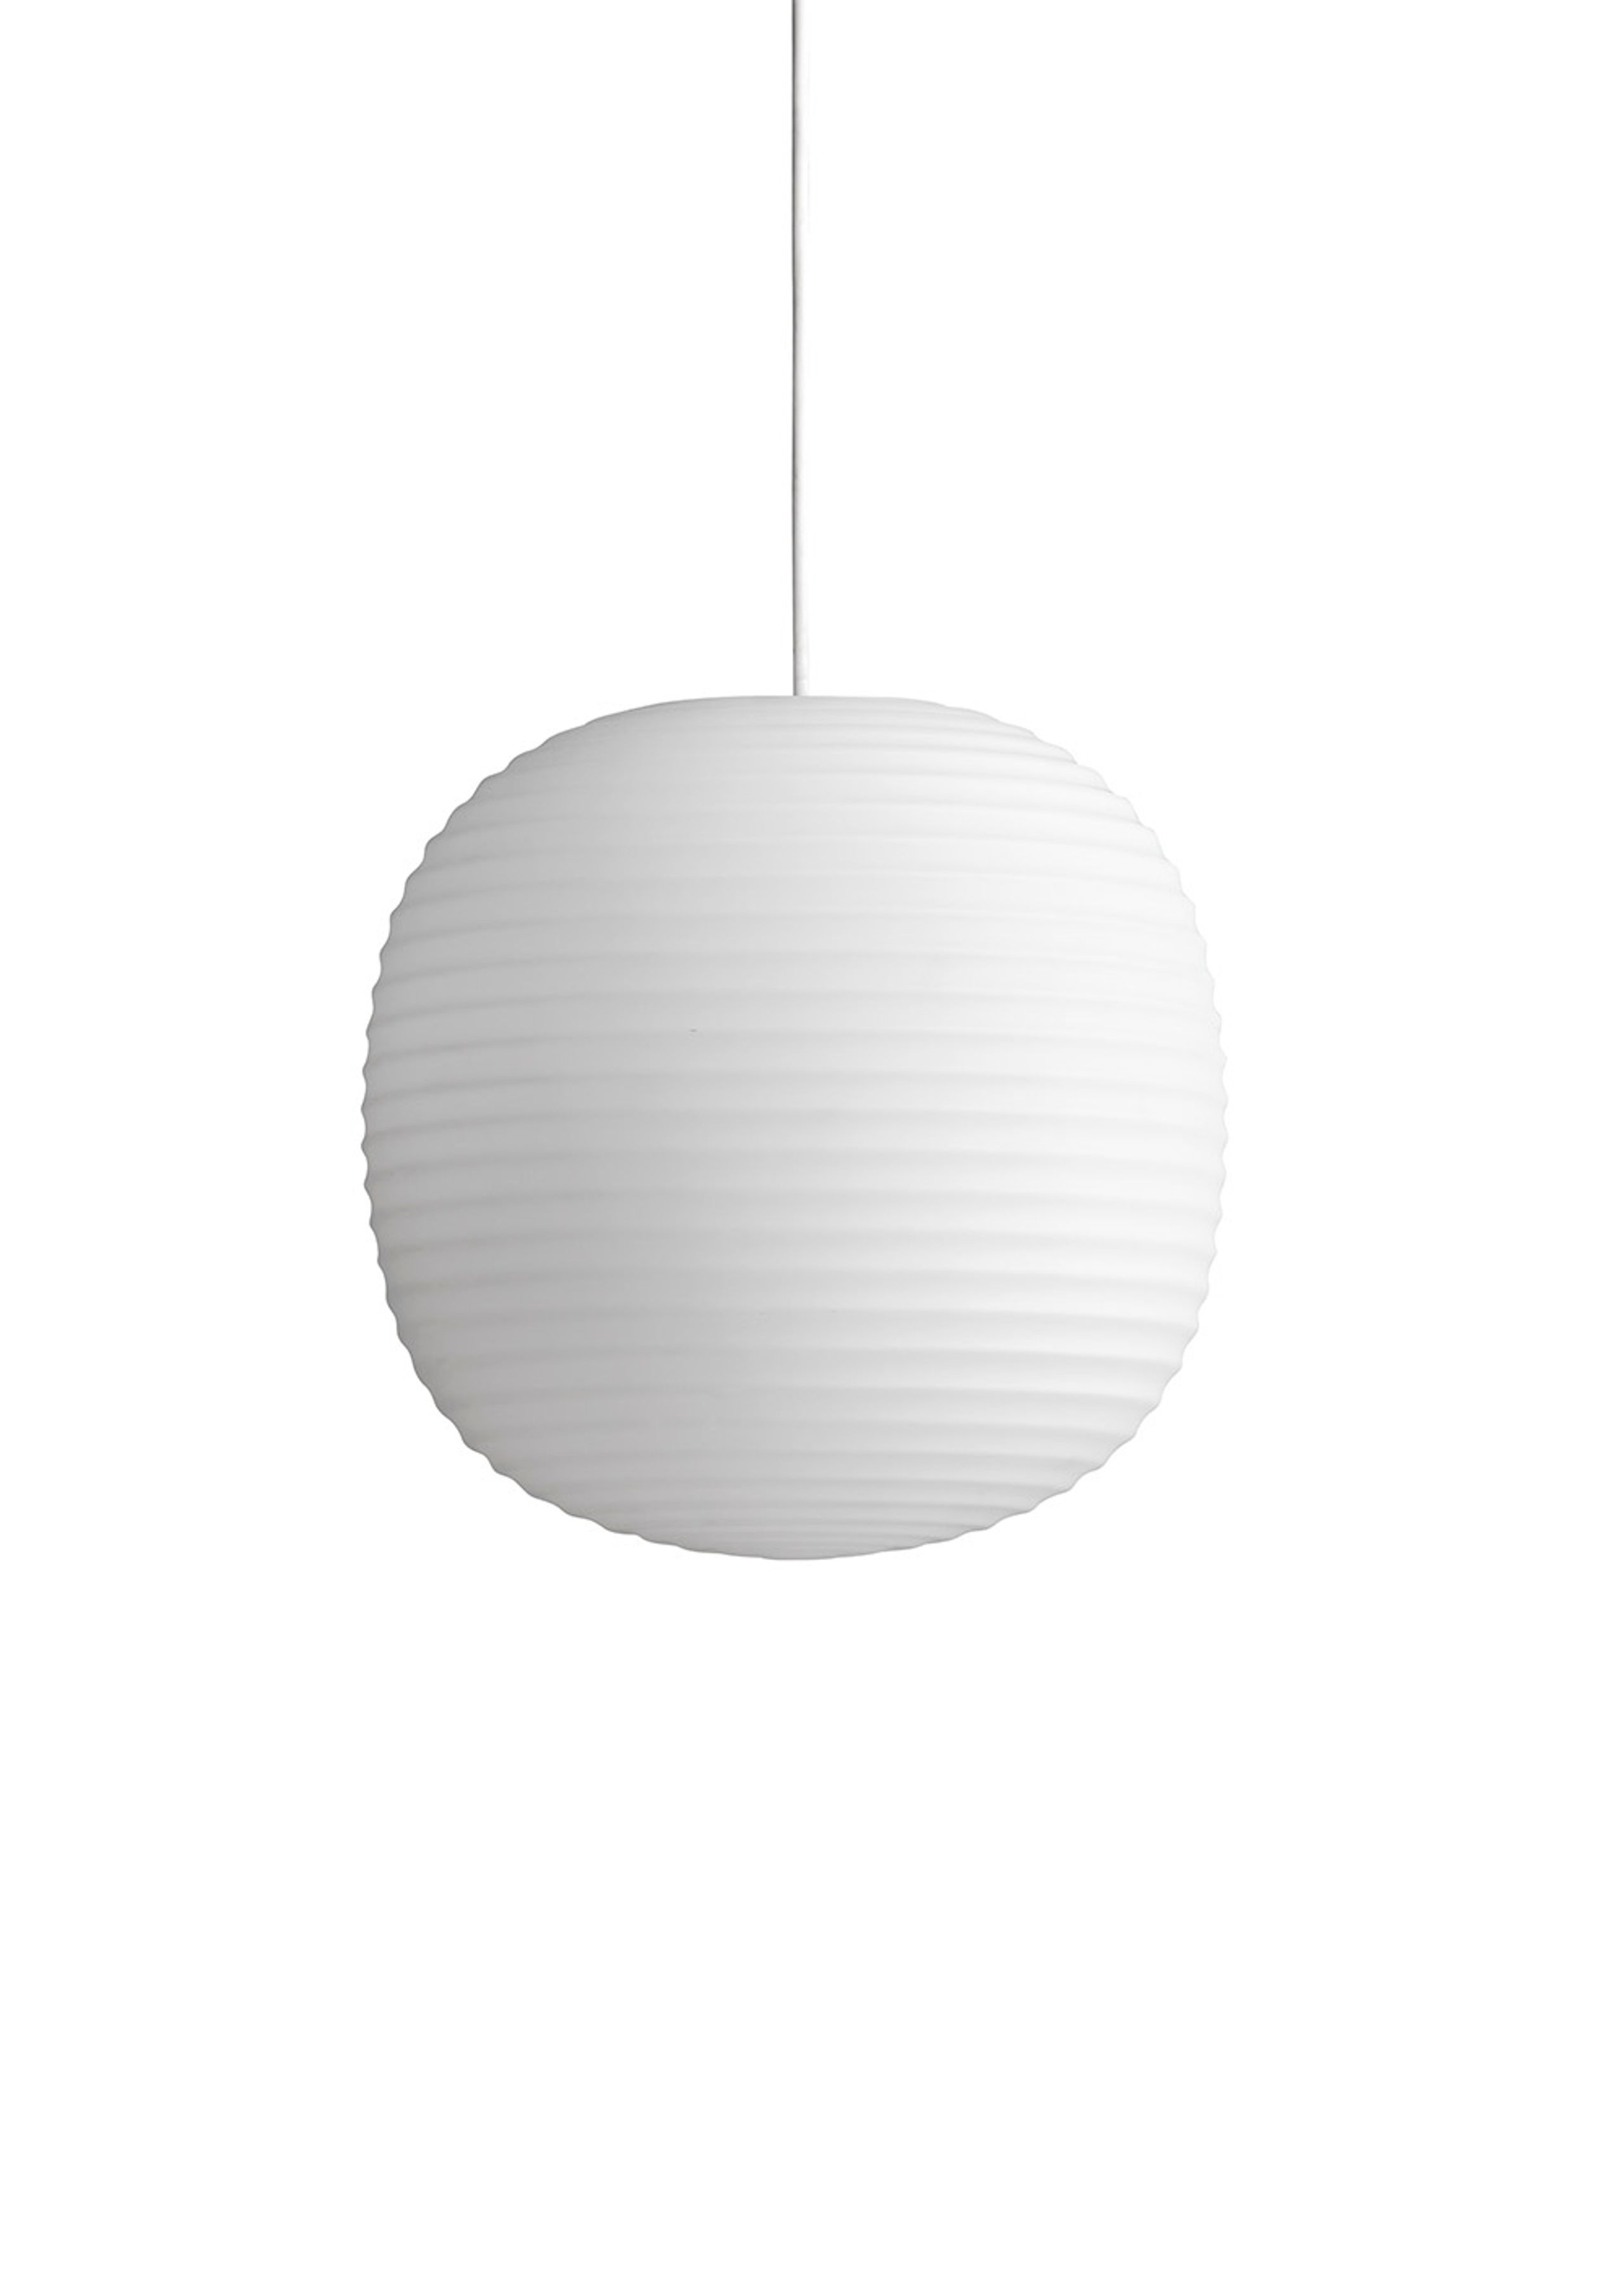 New Works - Pendule - Lantern Pendant Lamp - Medium